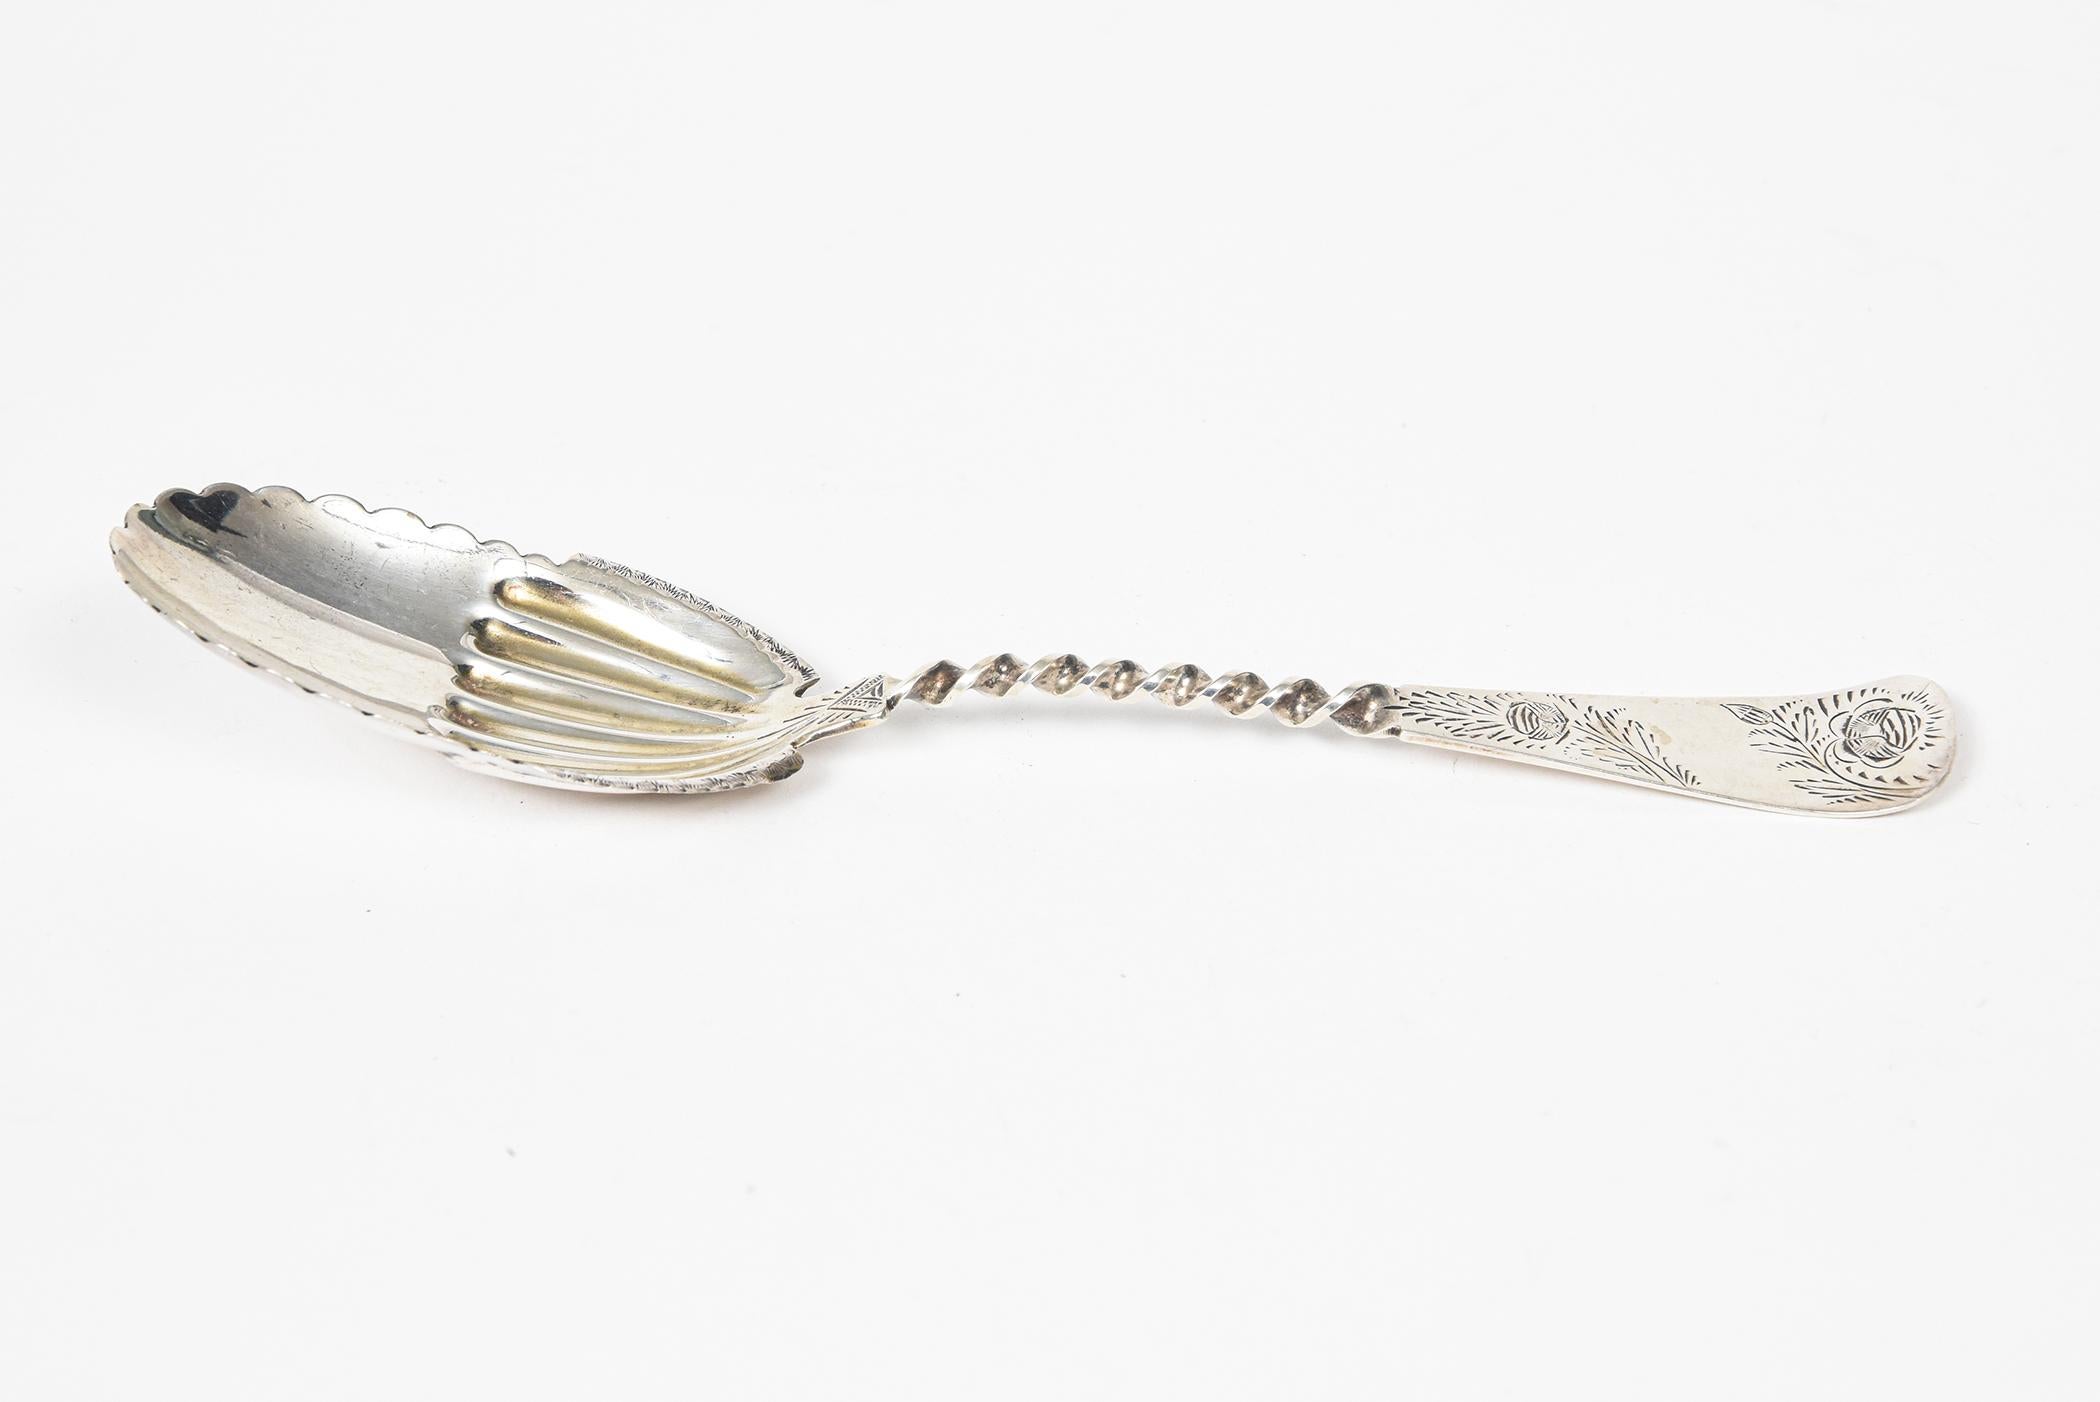 spoon with ridges